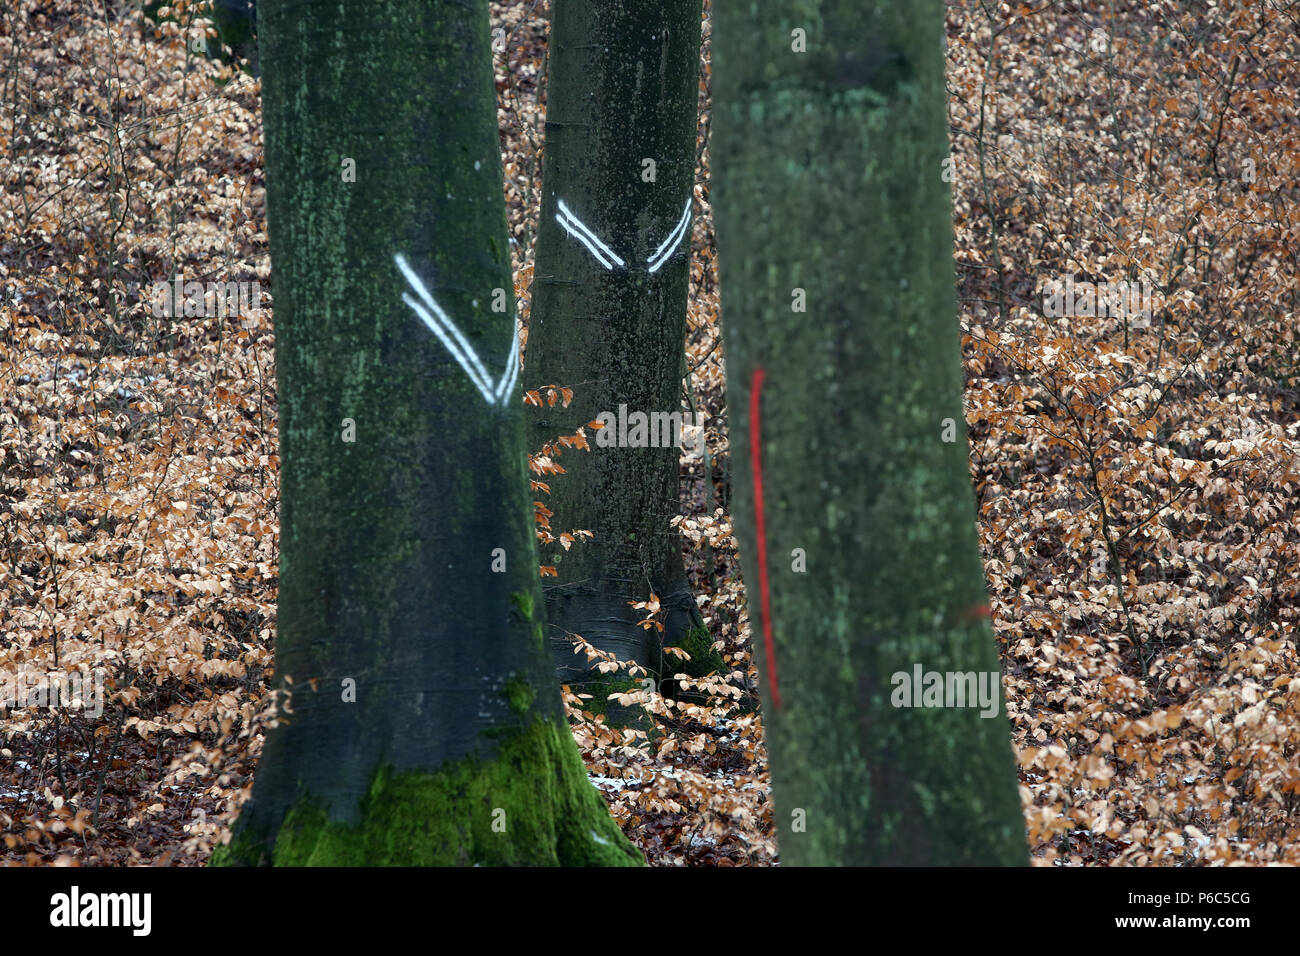 Nuovo Kaetwin, Germania - marcature sui tronchi di alberi della foresta Foto Stock